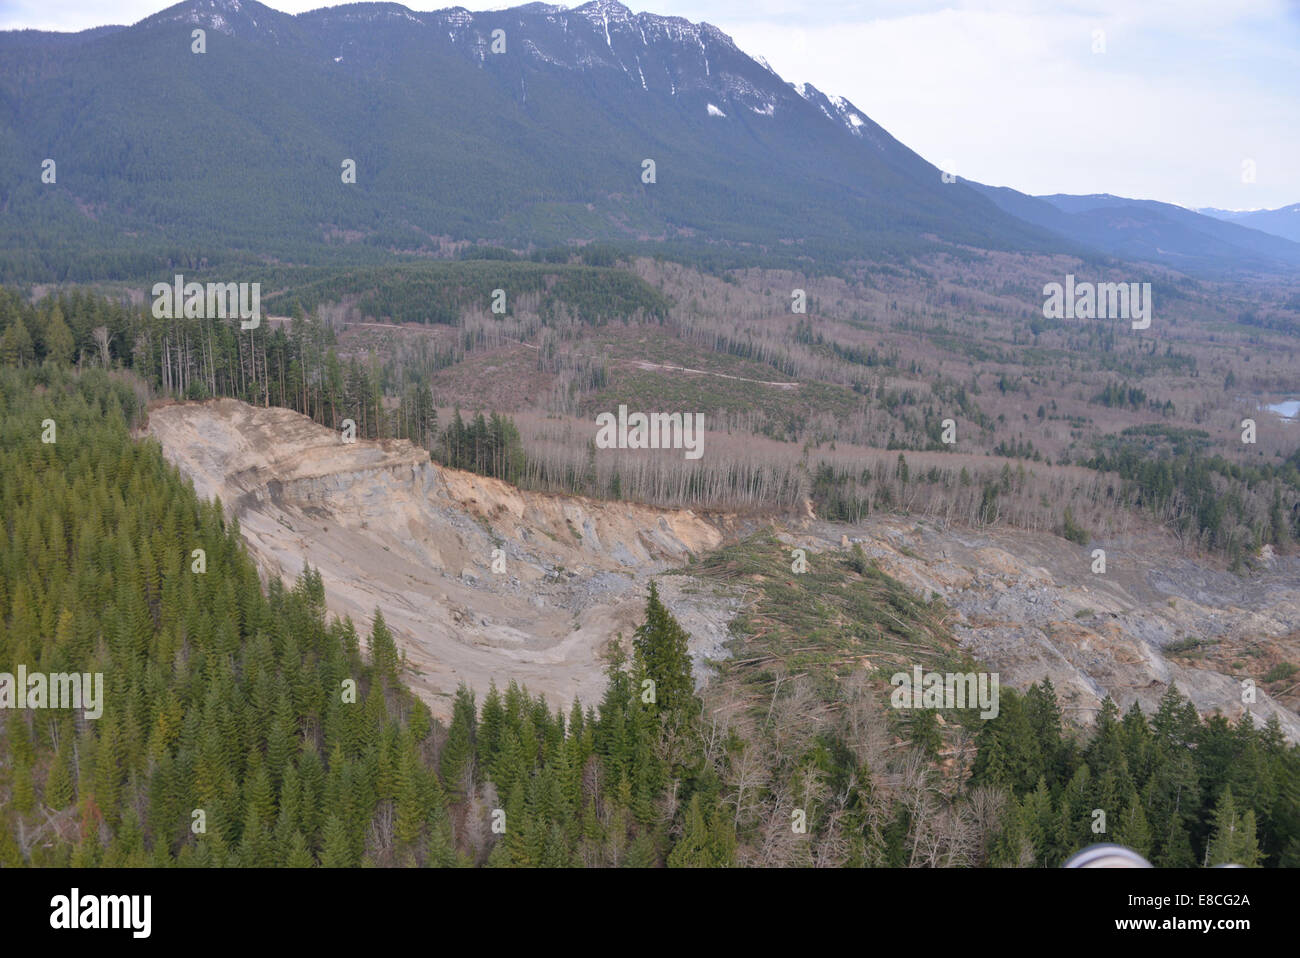 2014 Landslide in Washington State Stock Photo